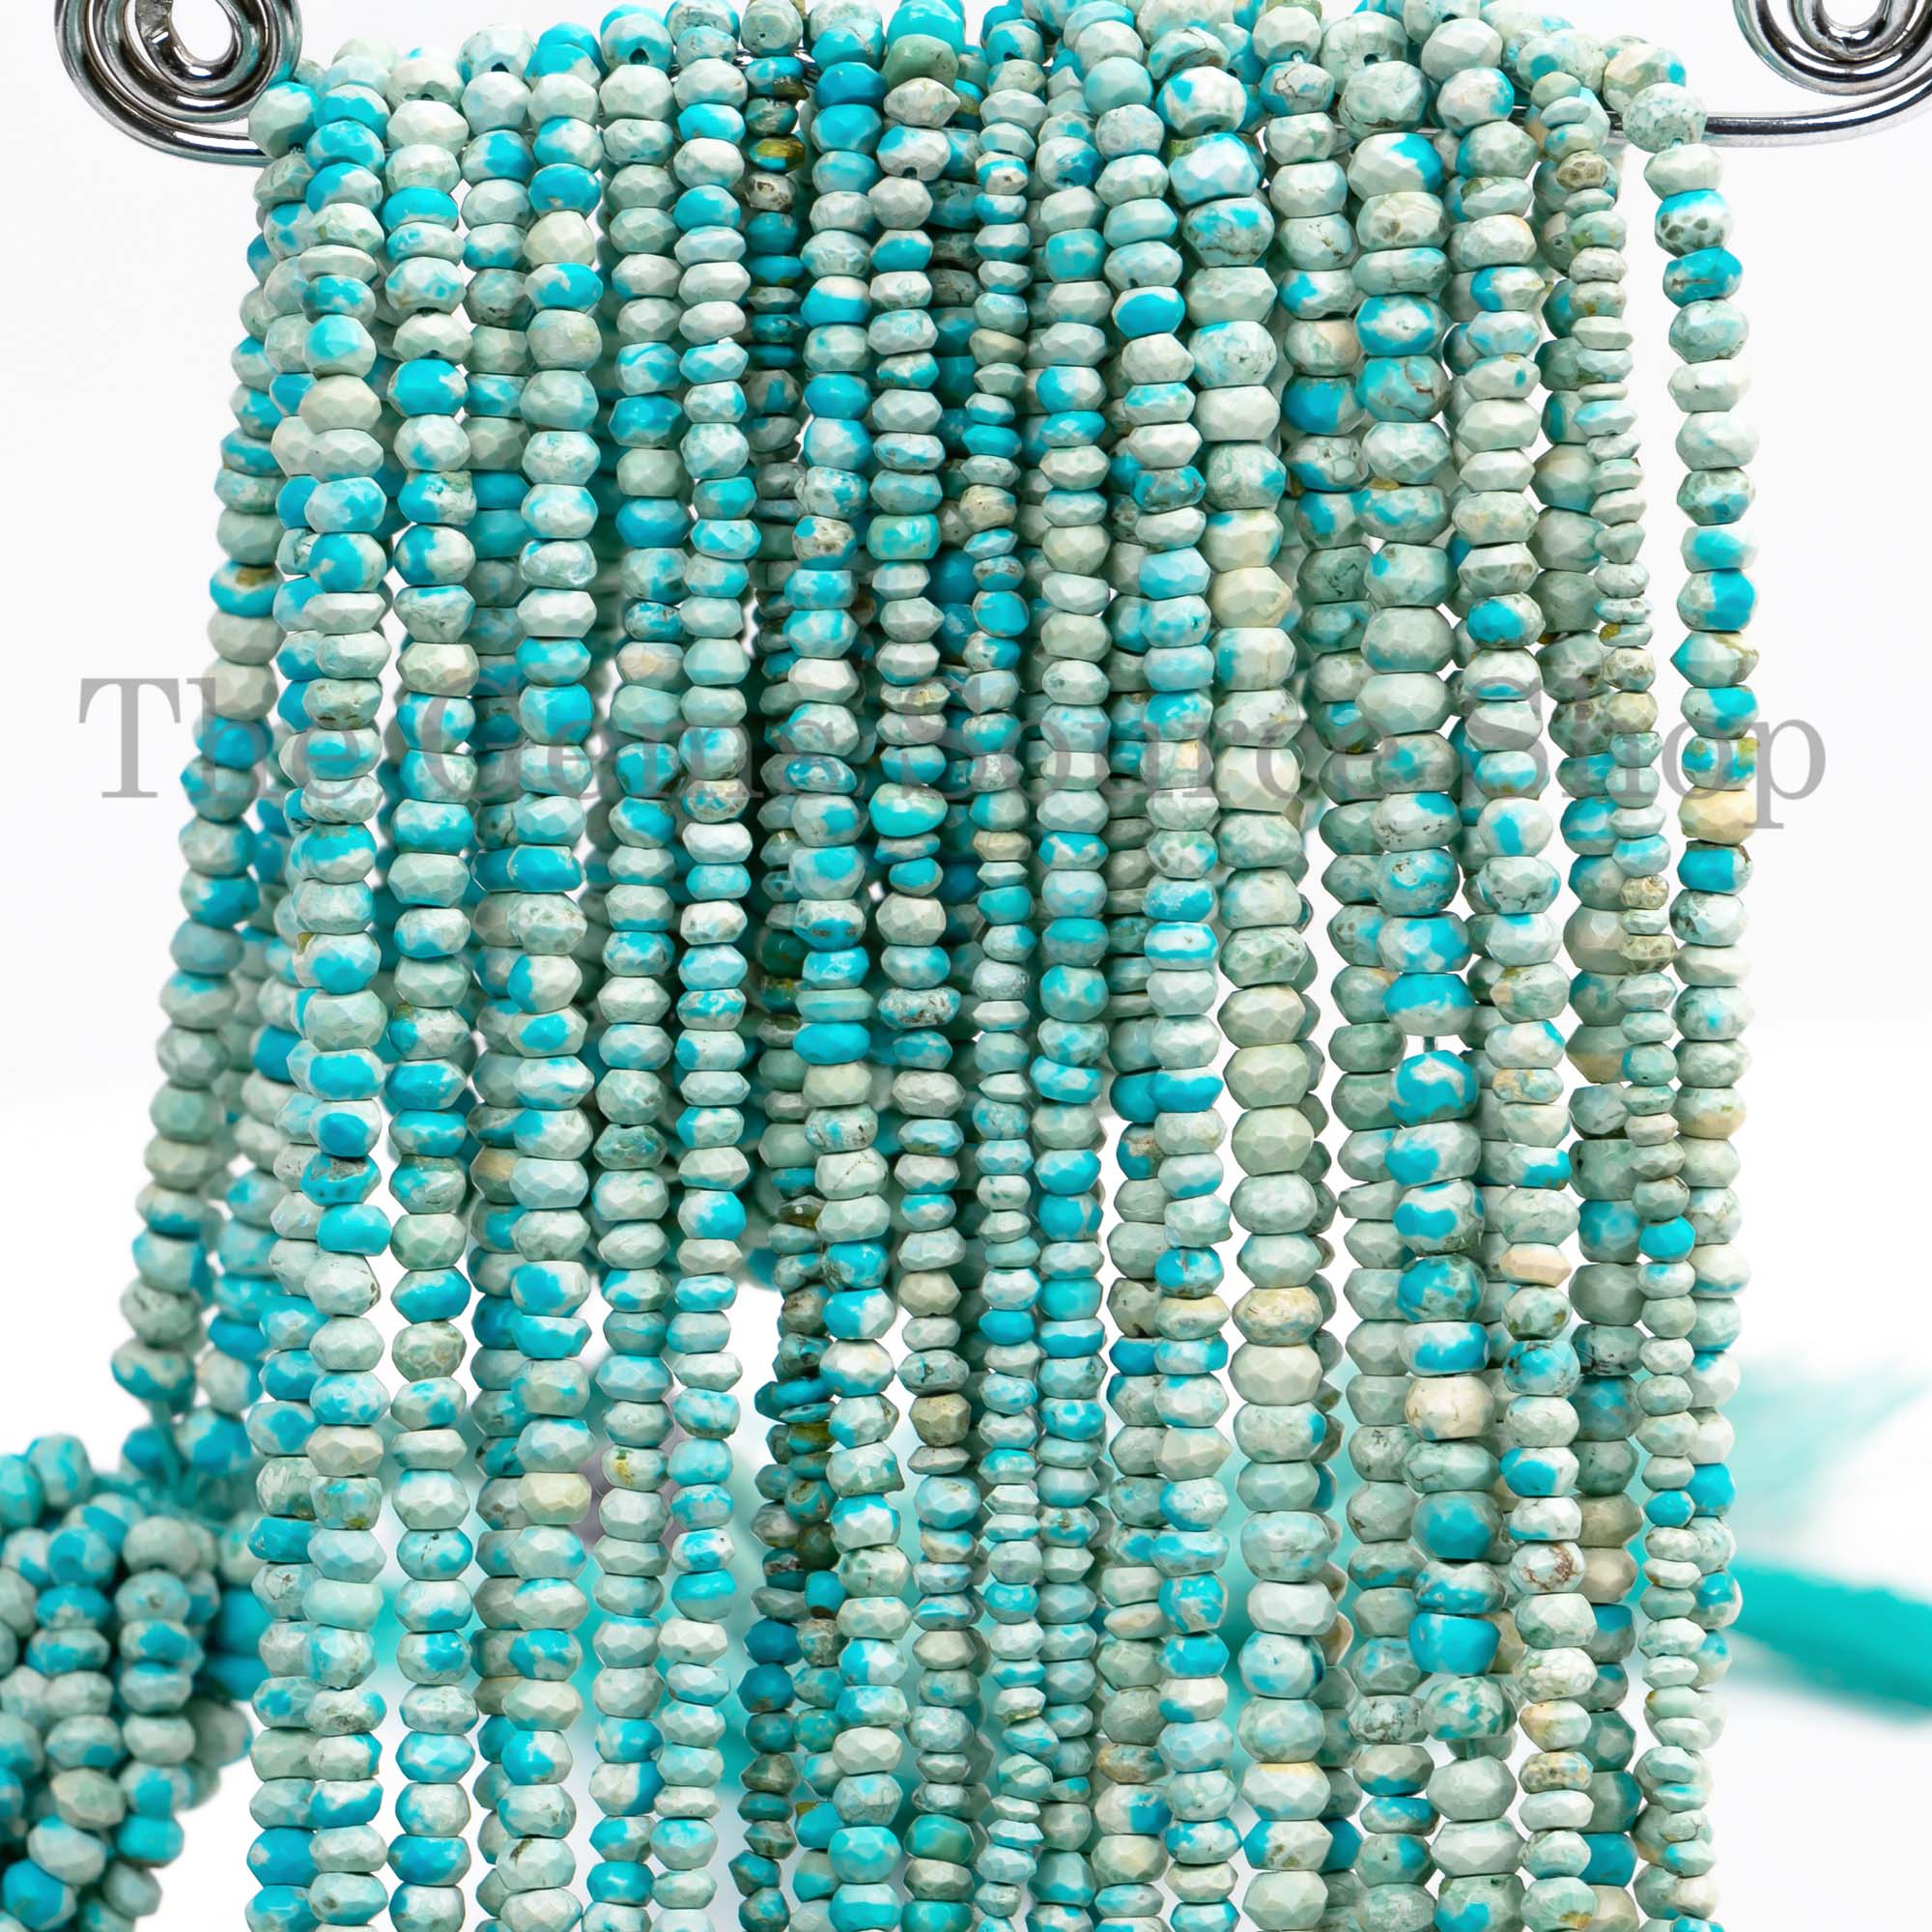 Sleeping Beauty Turquoise Beads, Turquoise Faceted Rondelle Beads, Turquoise Gemstone Beads